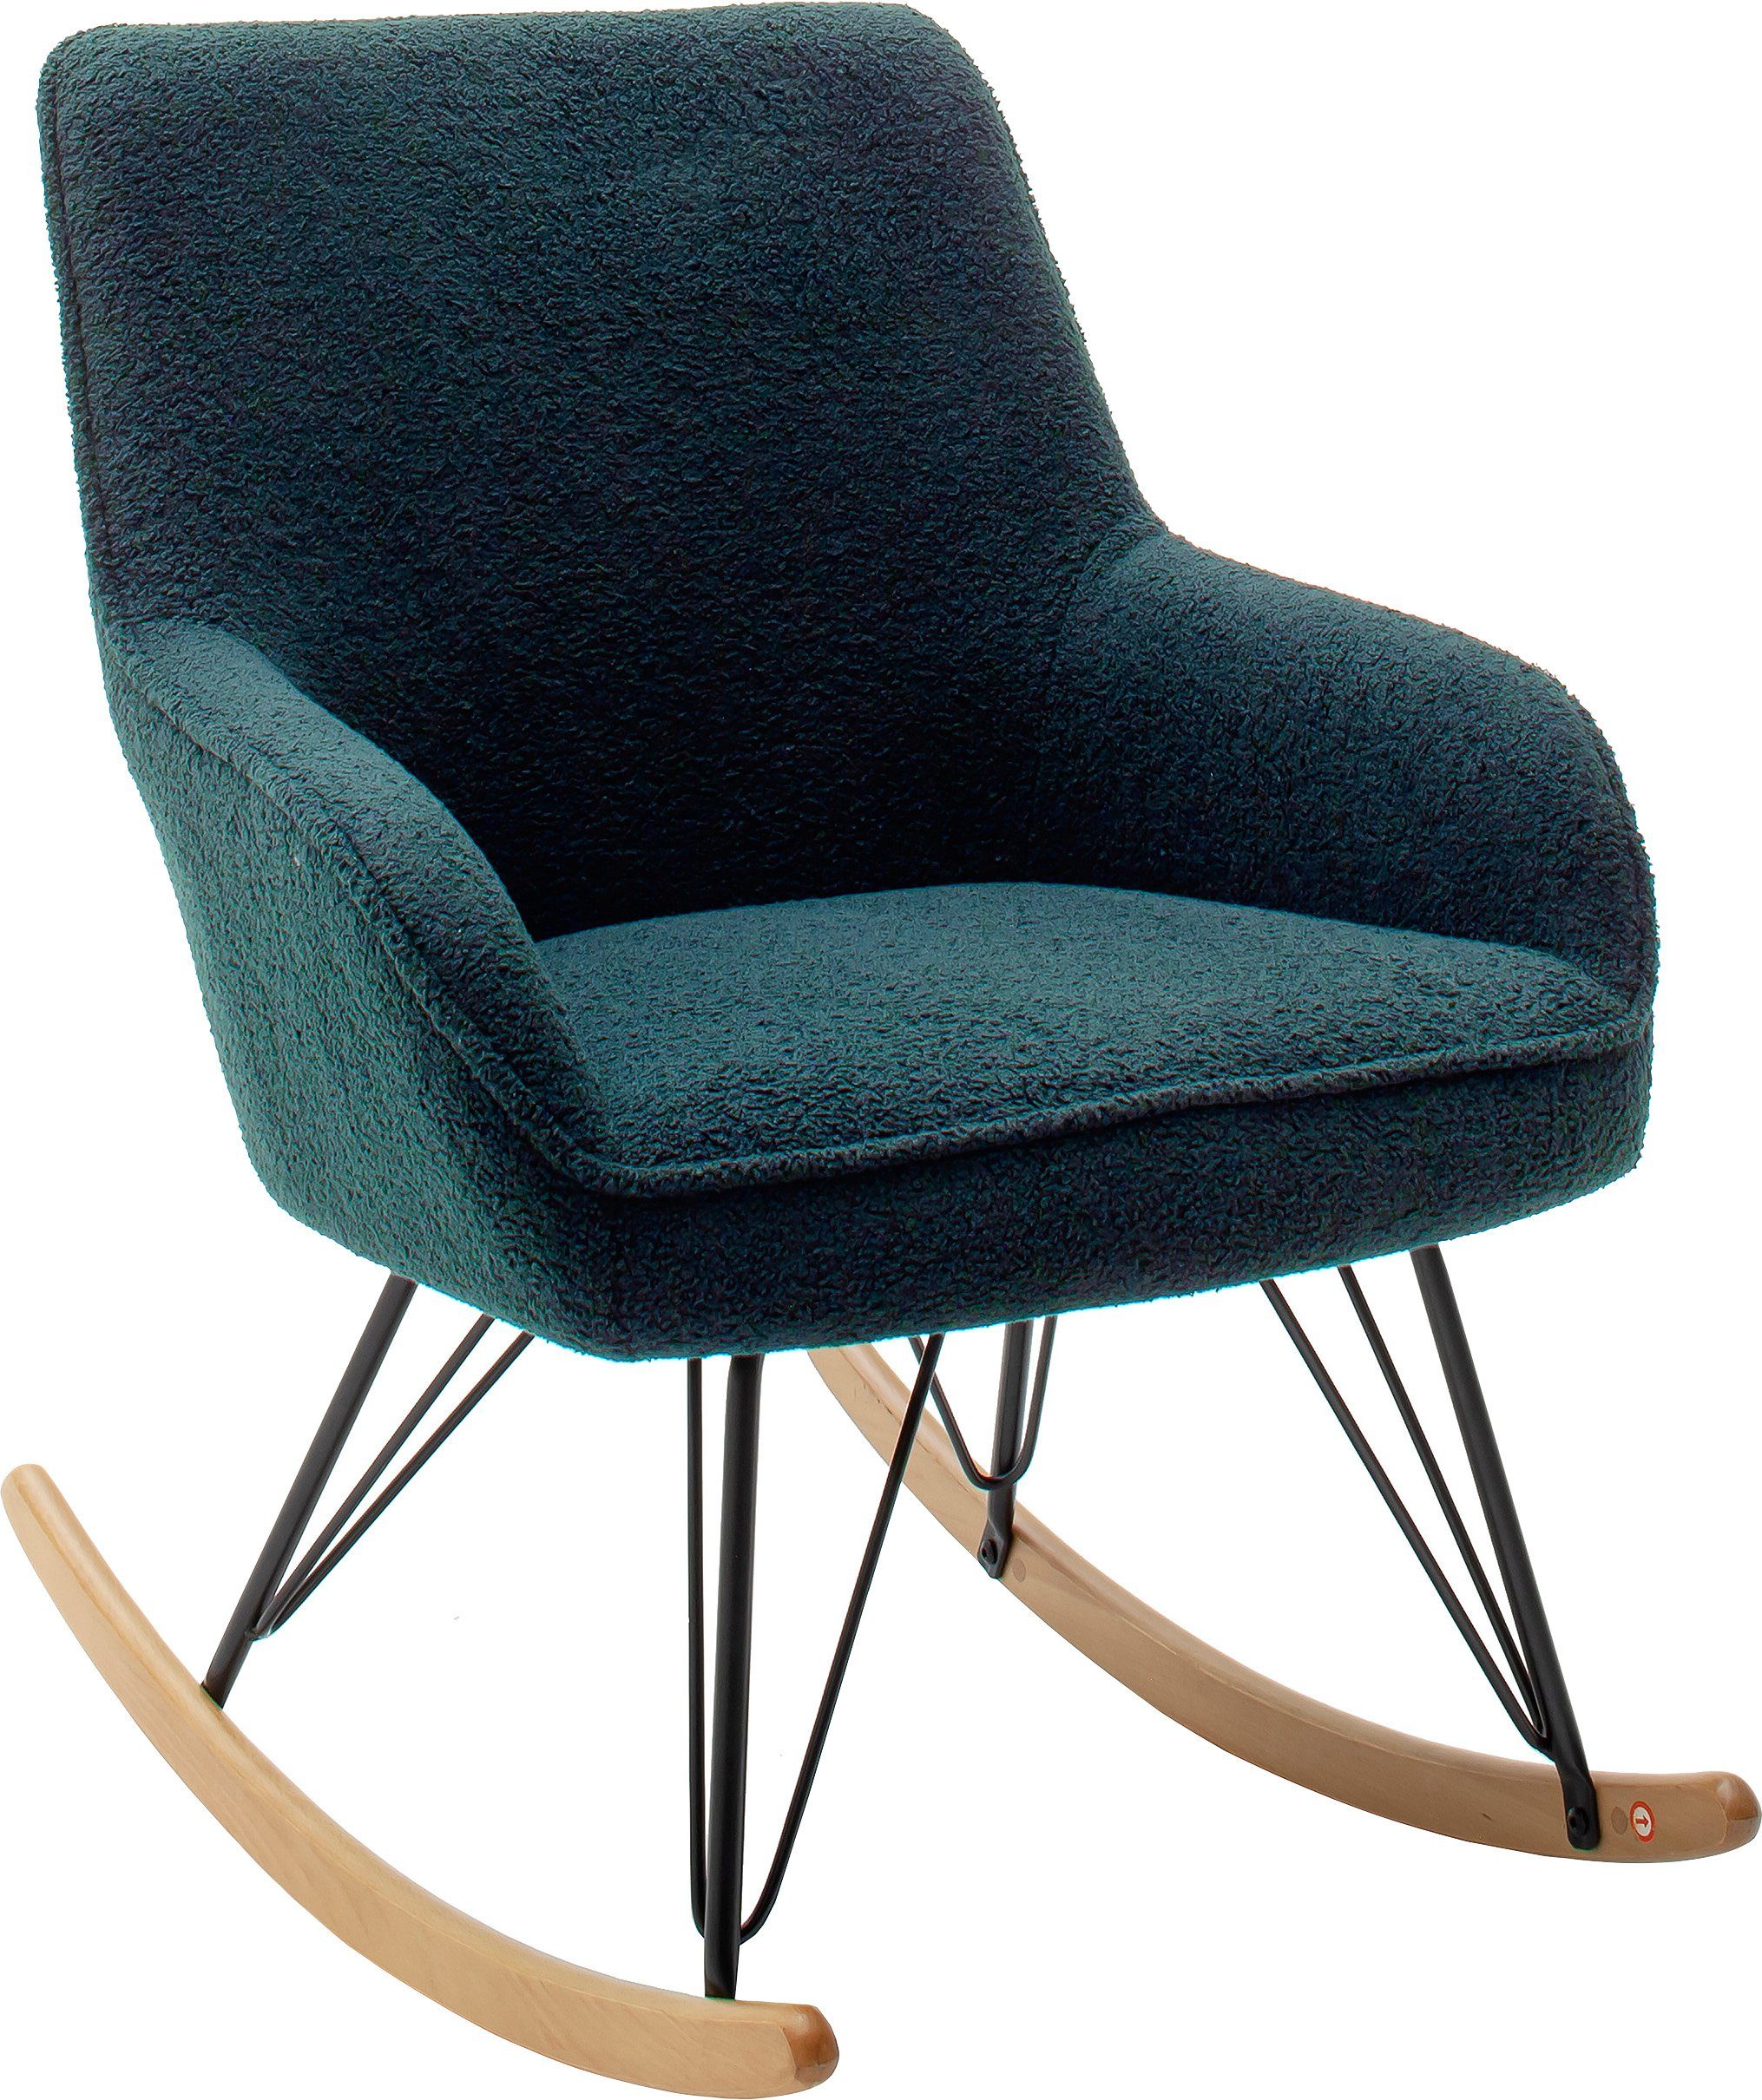 mca furniture schommelstoel oran stoel met beugelpoten met armleuning, tot 120 kg belastbaar, comfortzithoogte 49 cm groen